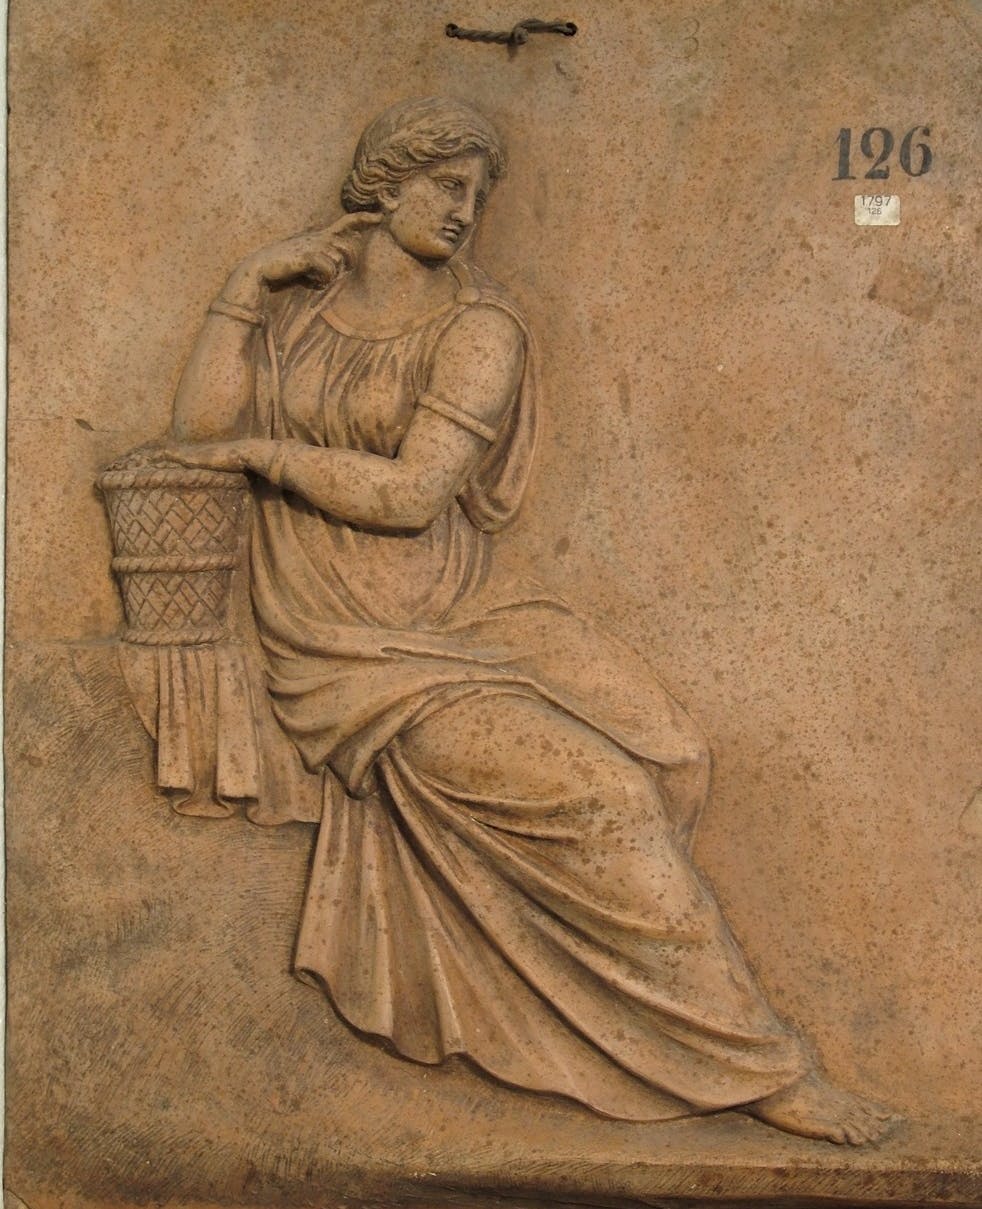 Lastra di terracotta con bassorilievo di figura femminile appoggiata a una cesta